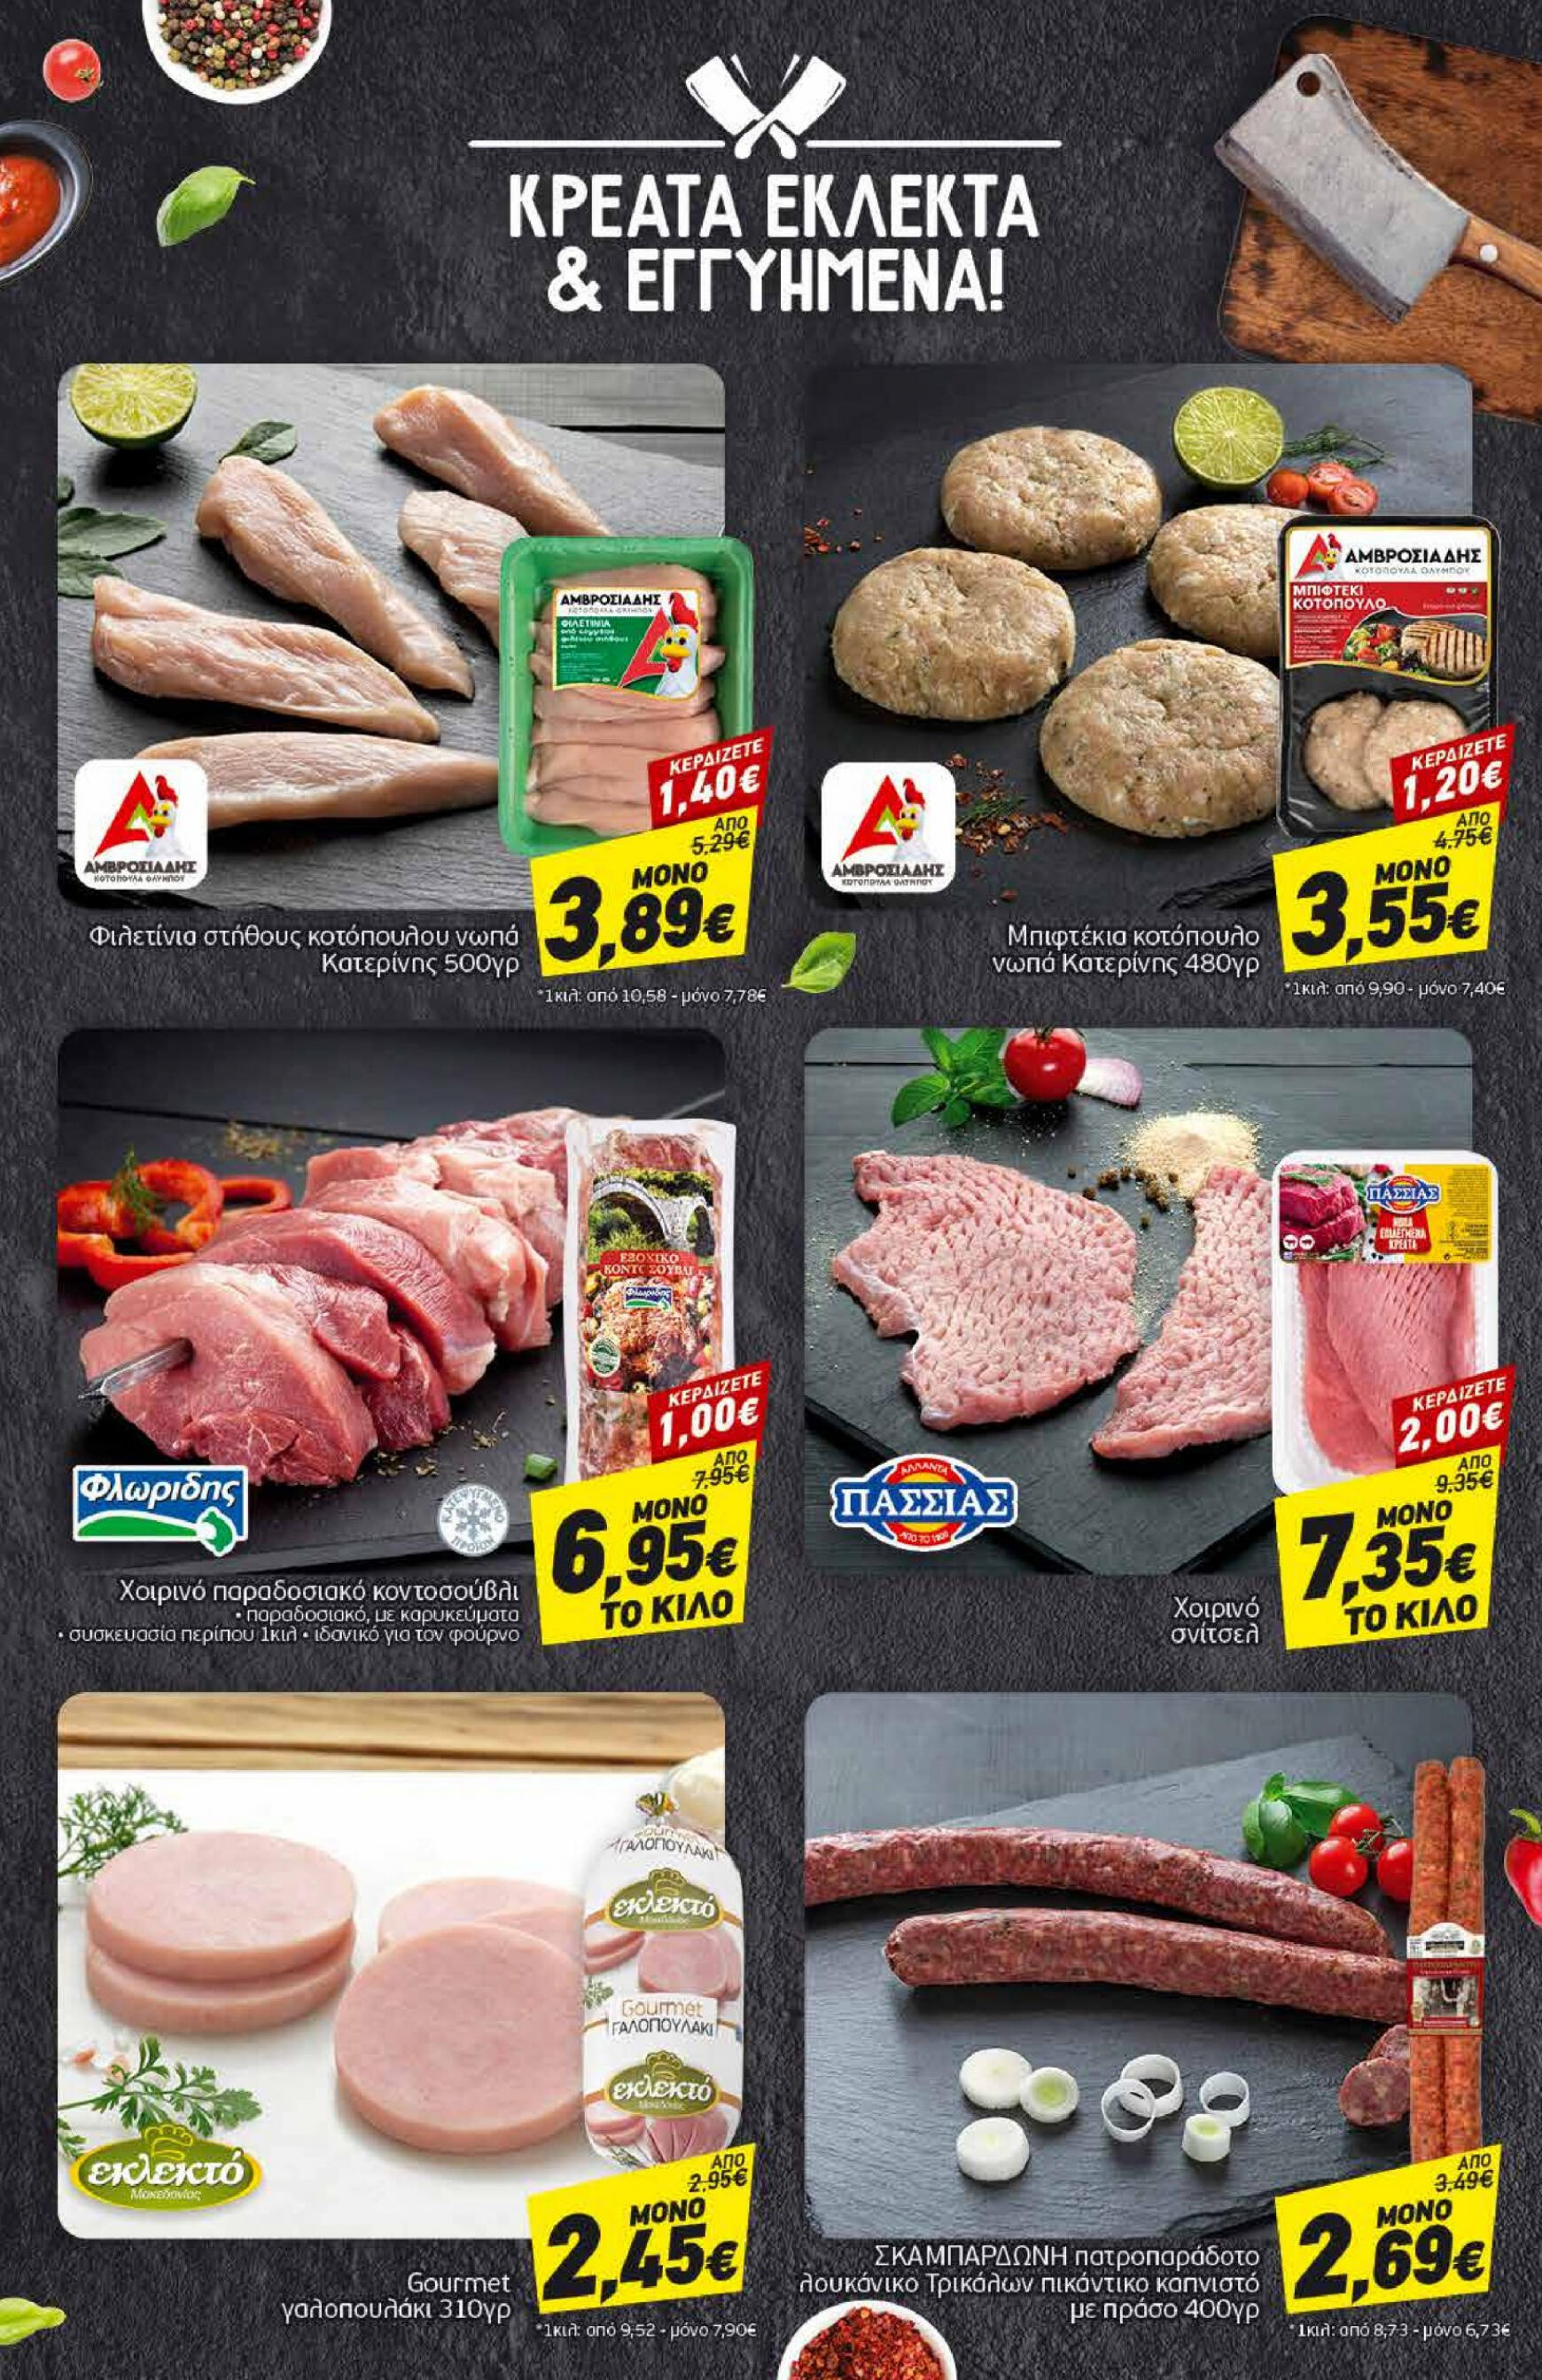 discount-markt - Discount Markt φυλλάδιο ρεύματος 03/06 - 08/06 - page: 6